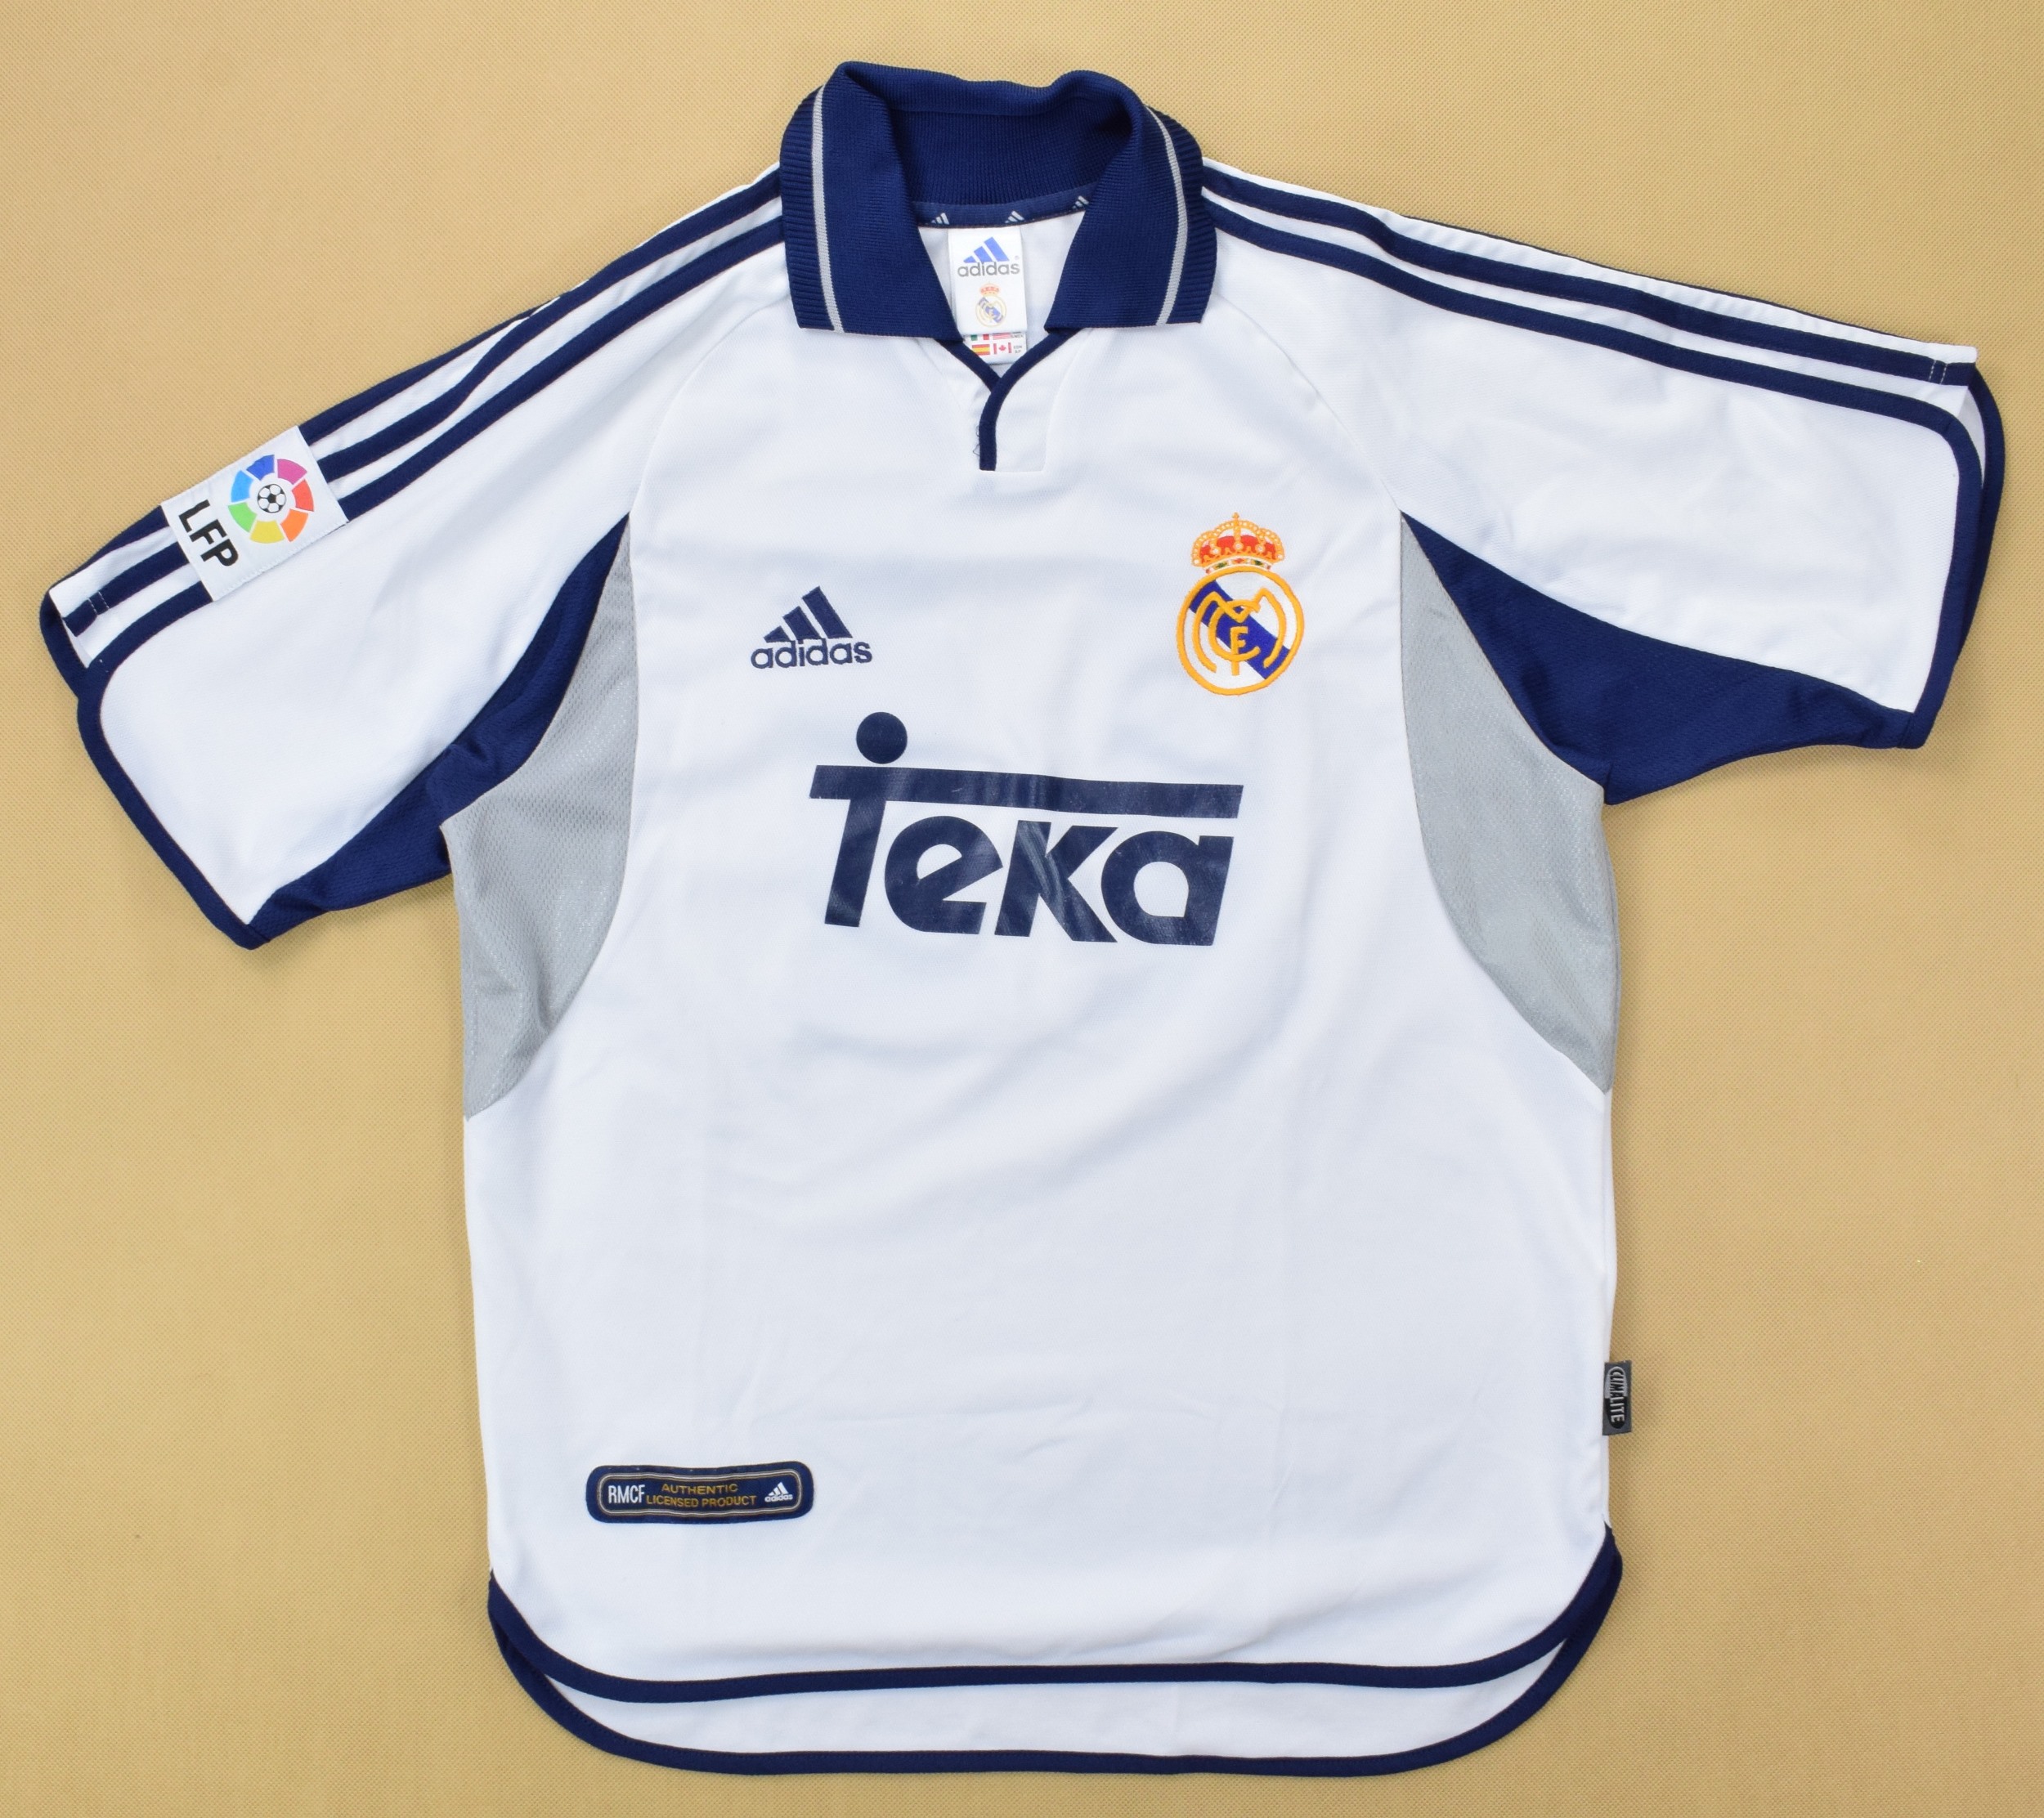 22.00 - Real Madrid Jersey 00/01 history retro Football Kits Custom Name  2000 2001 Soccer Sport Shirt 